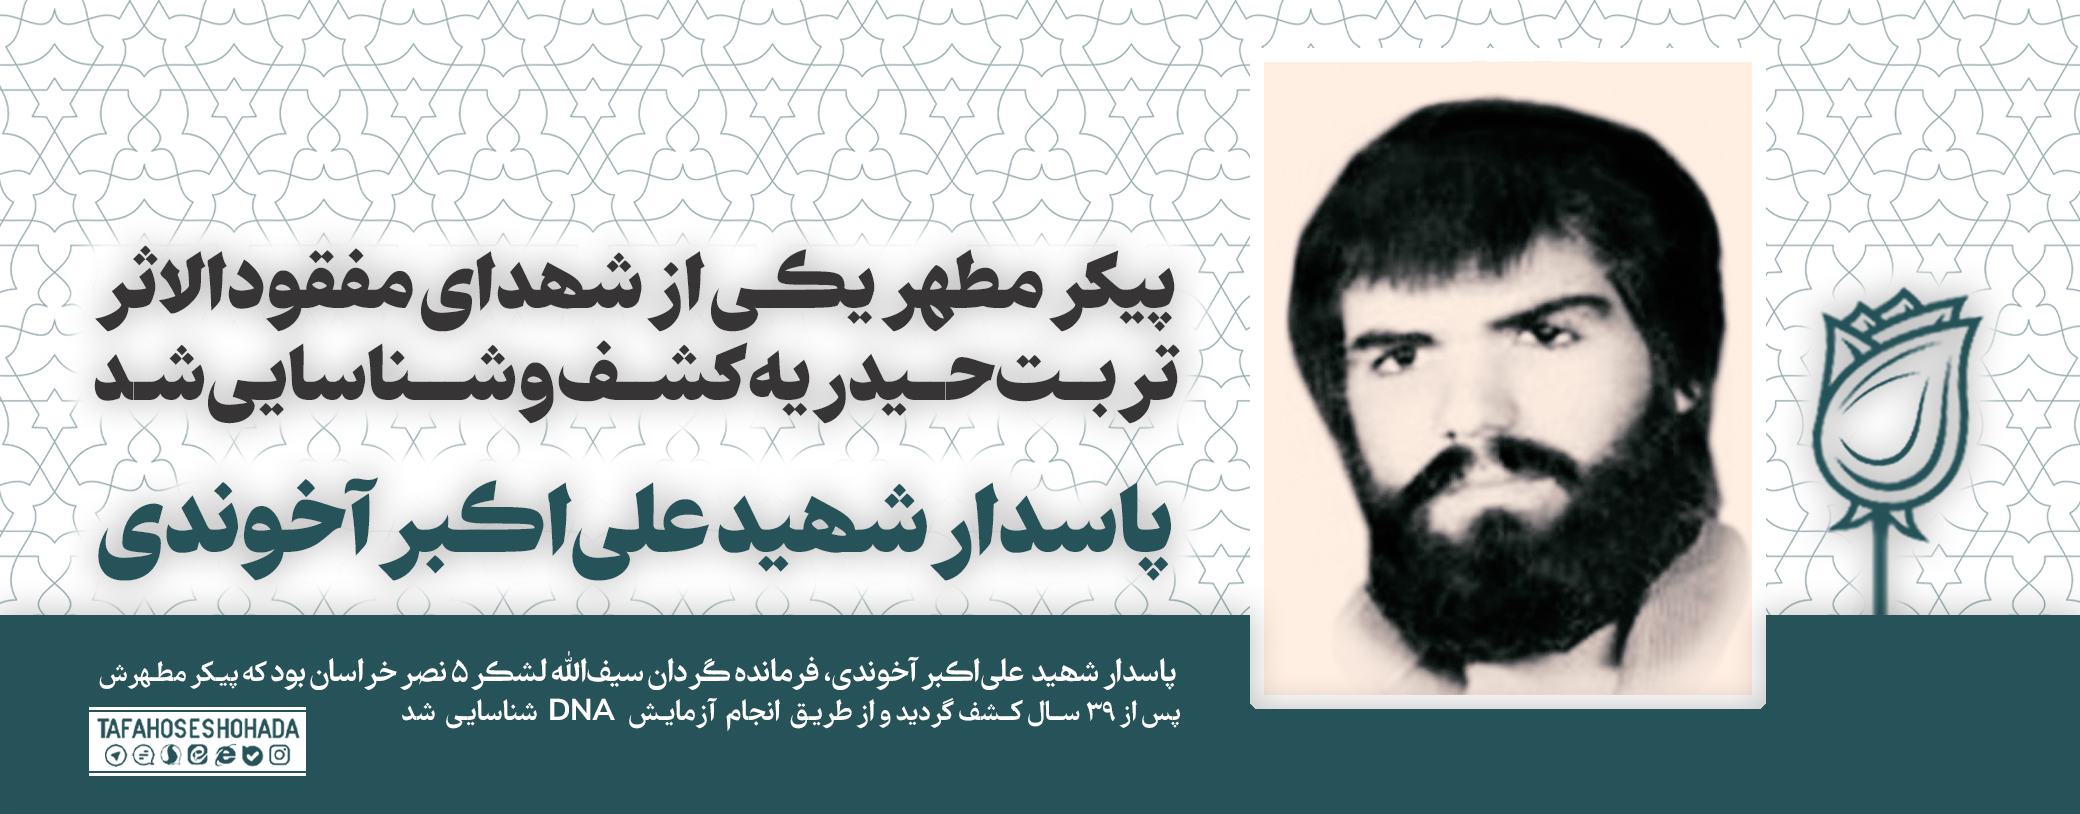 هویت فرمانده مفقودالاثر گردان سیف الله پس از ۳۹ سال شناسایی شد